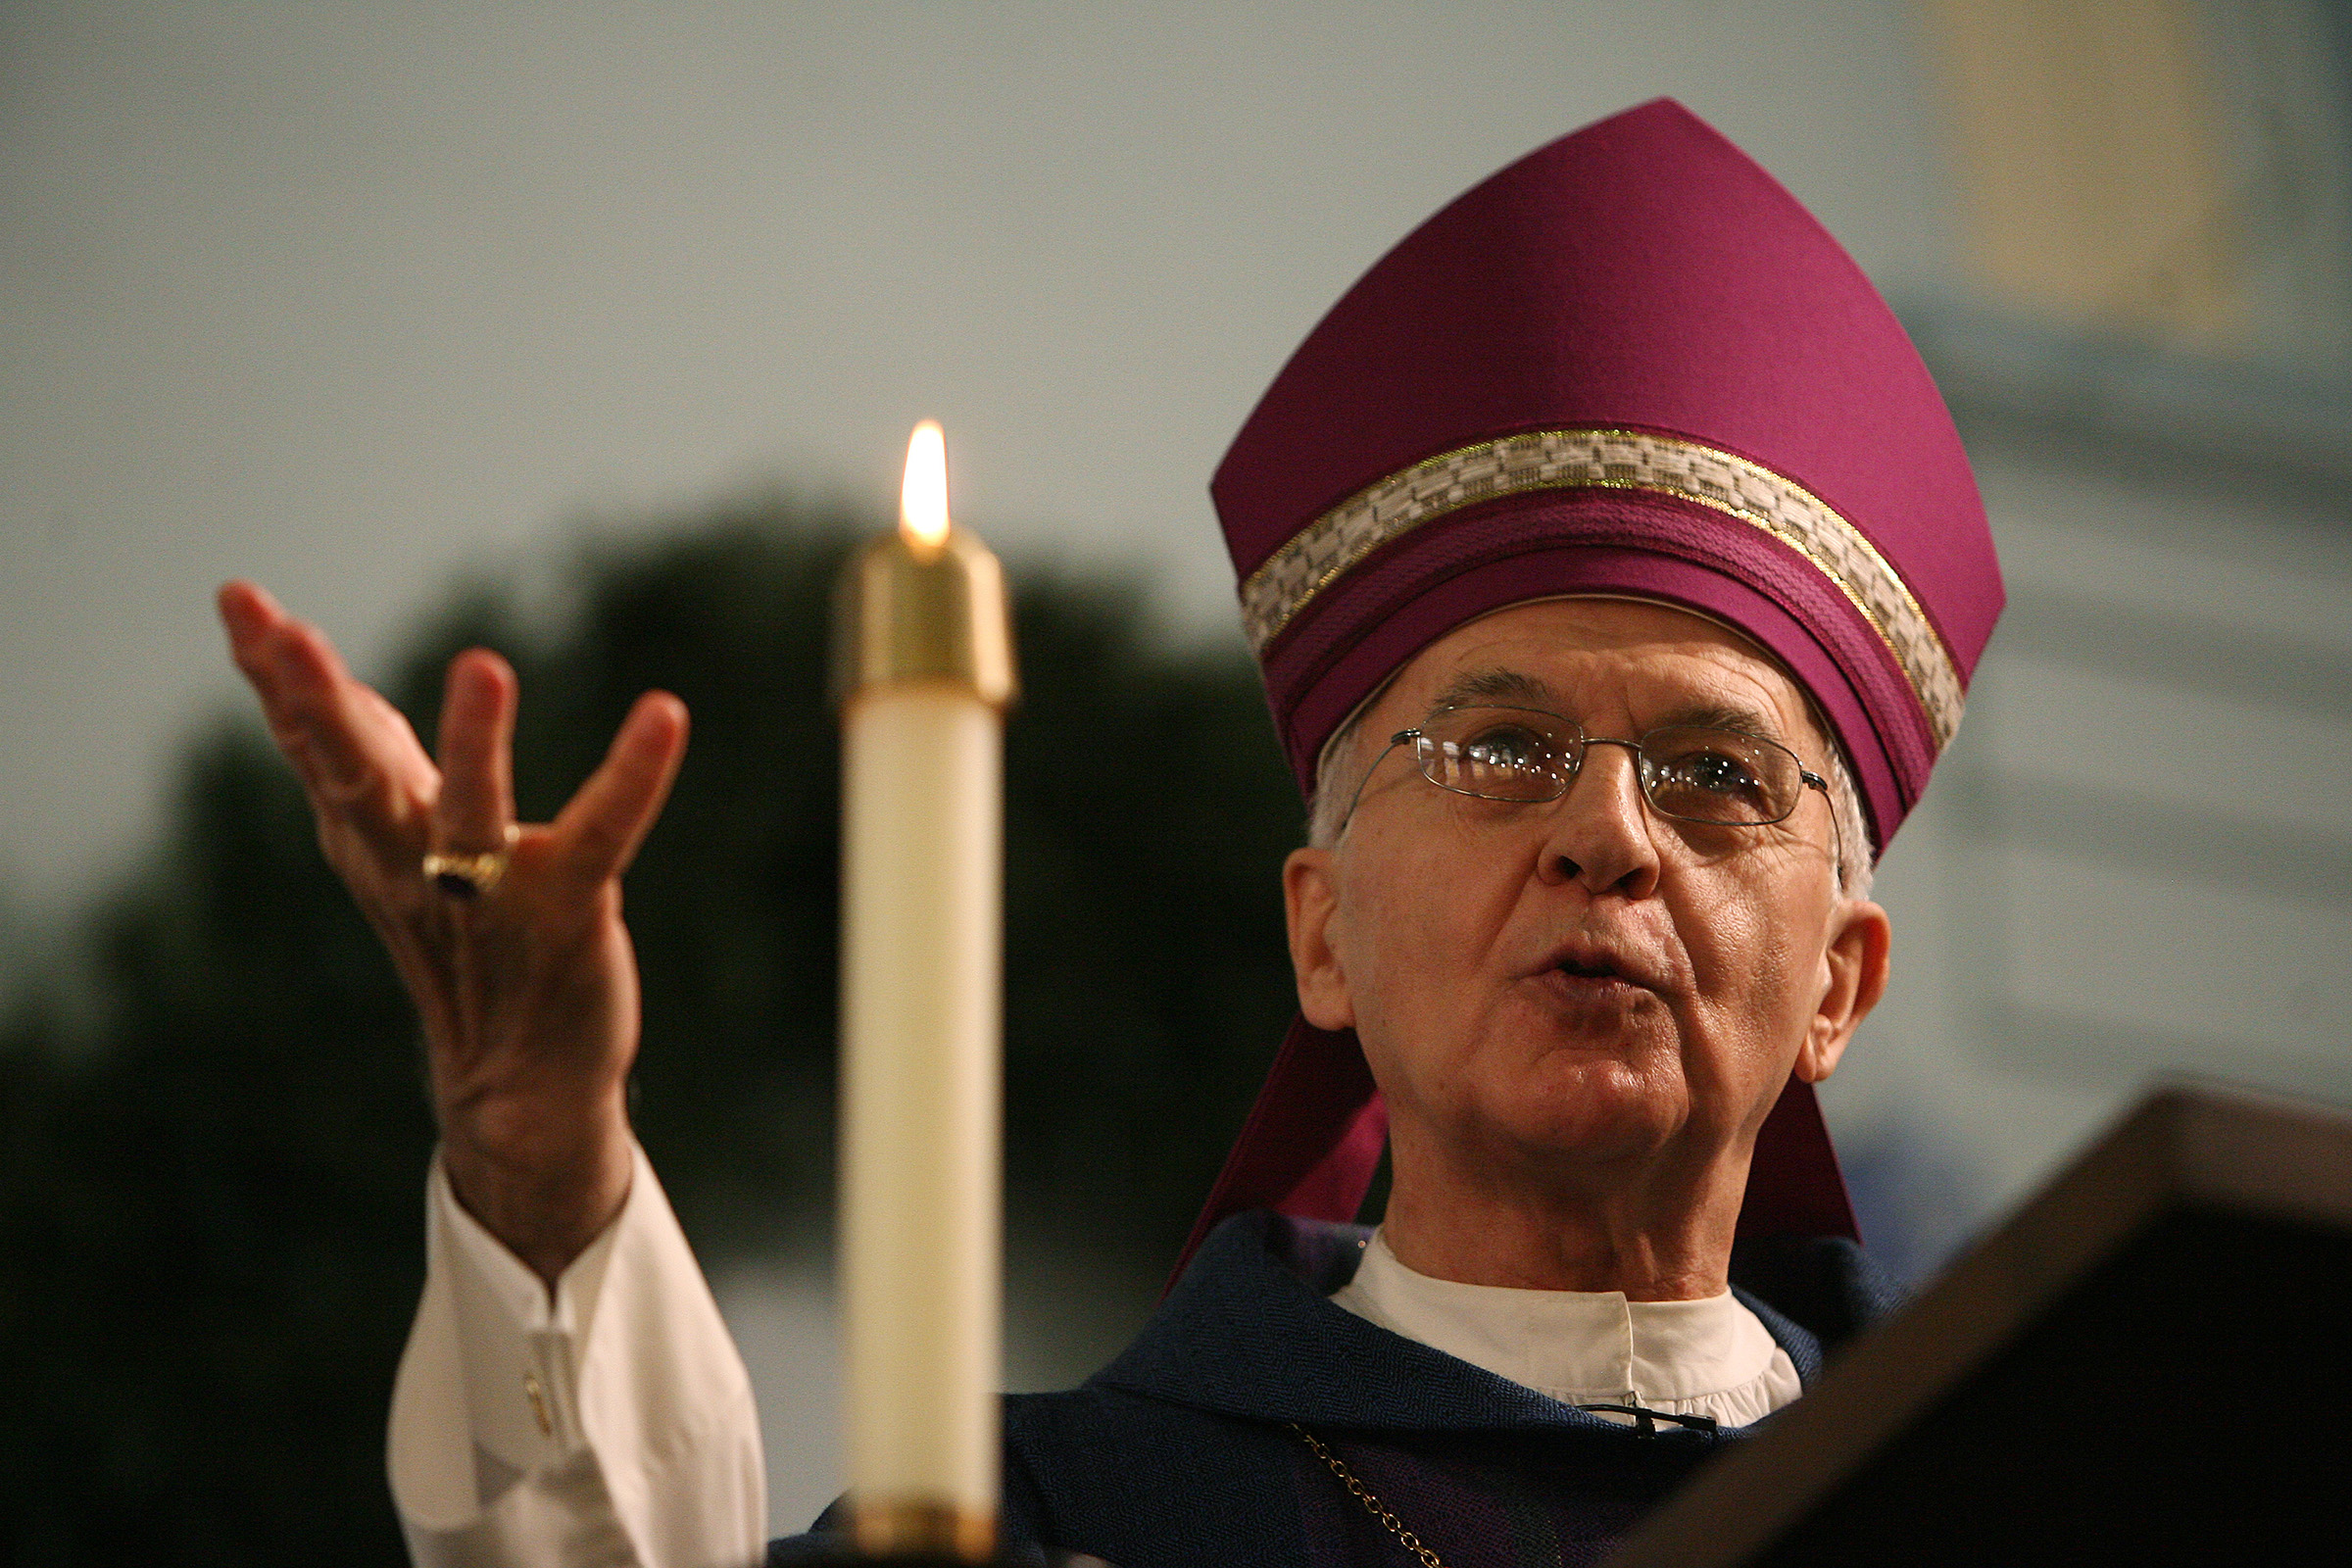 Bishop Emeritus Dale Melczek